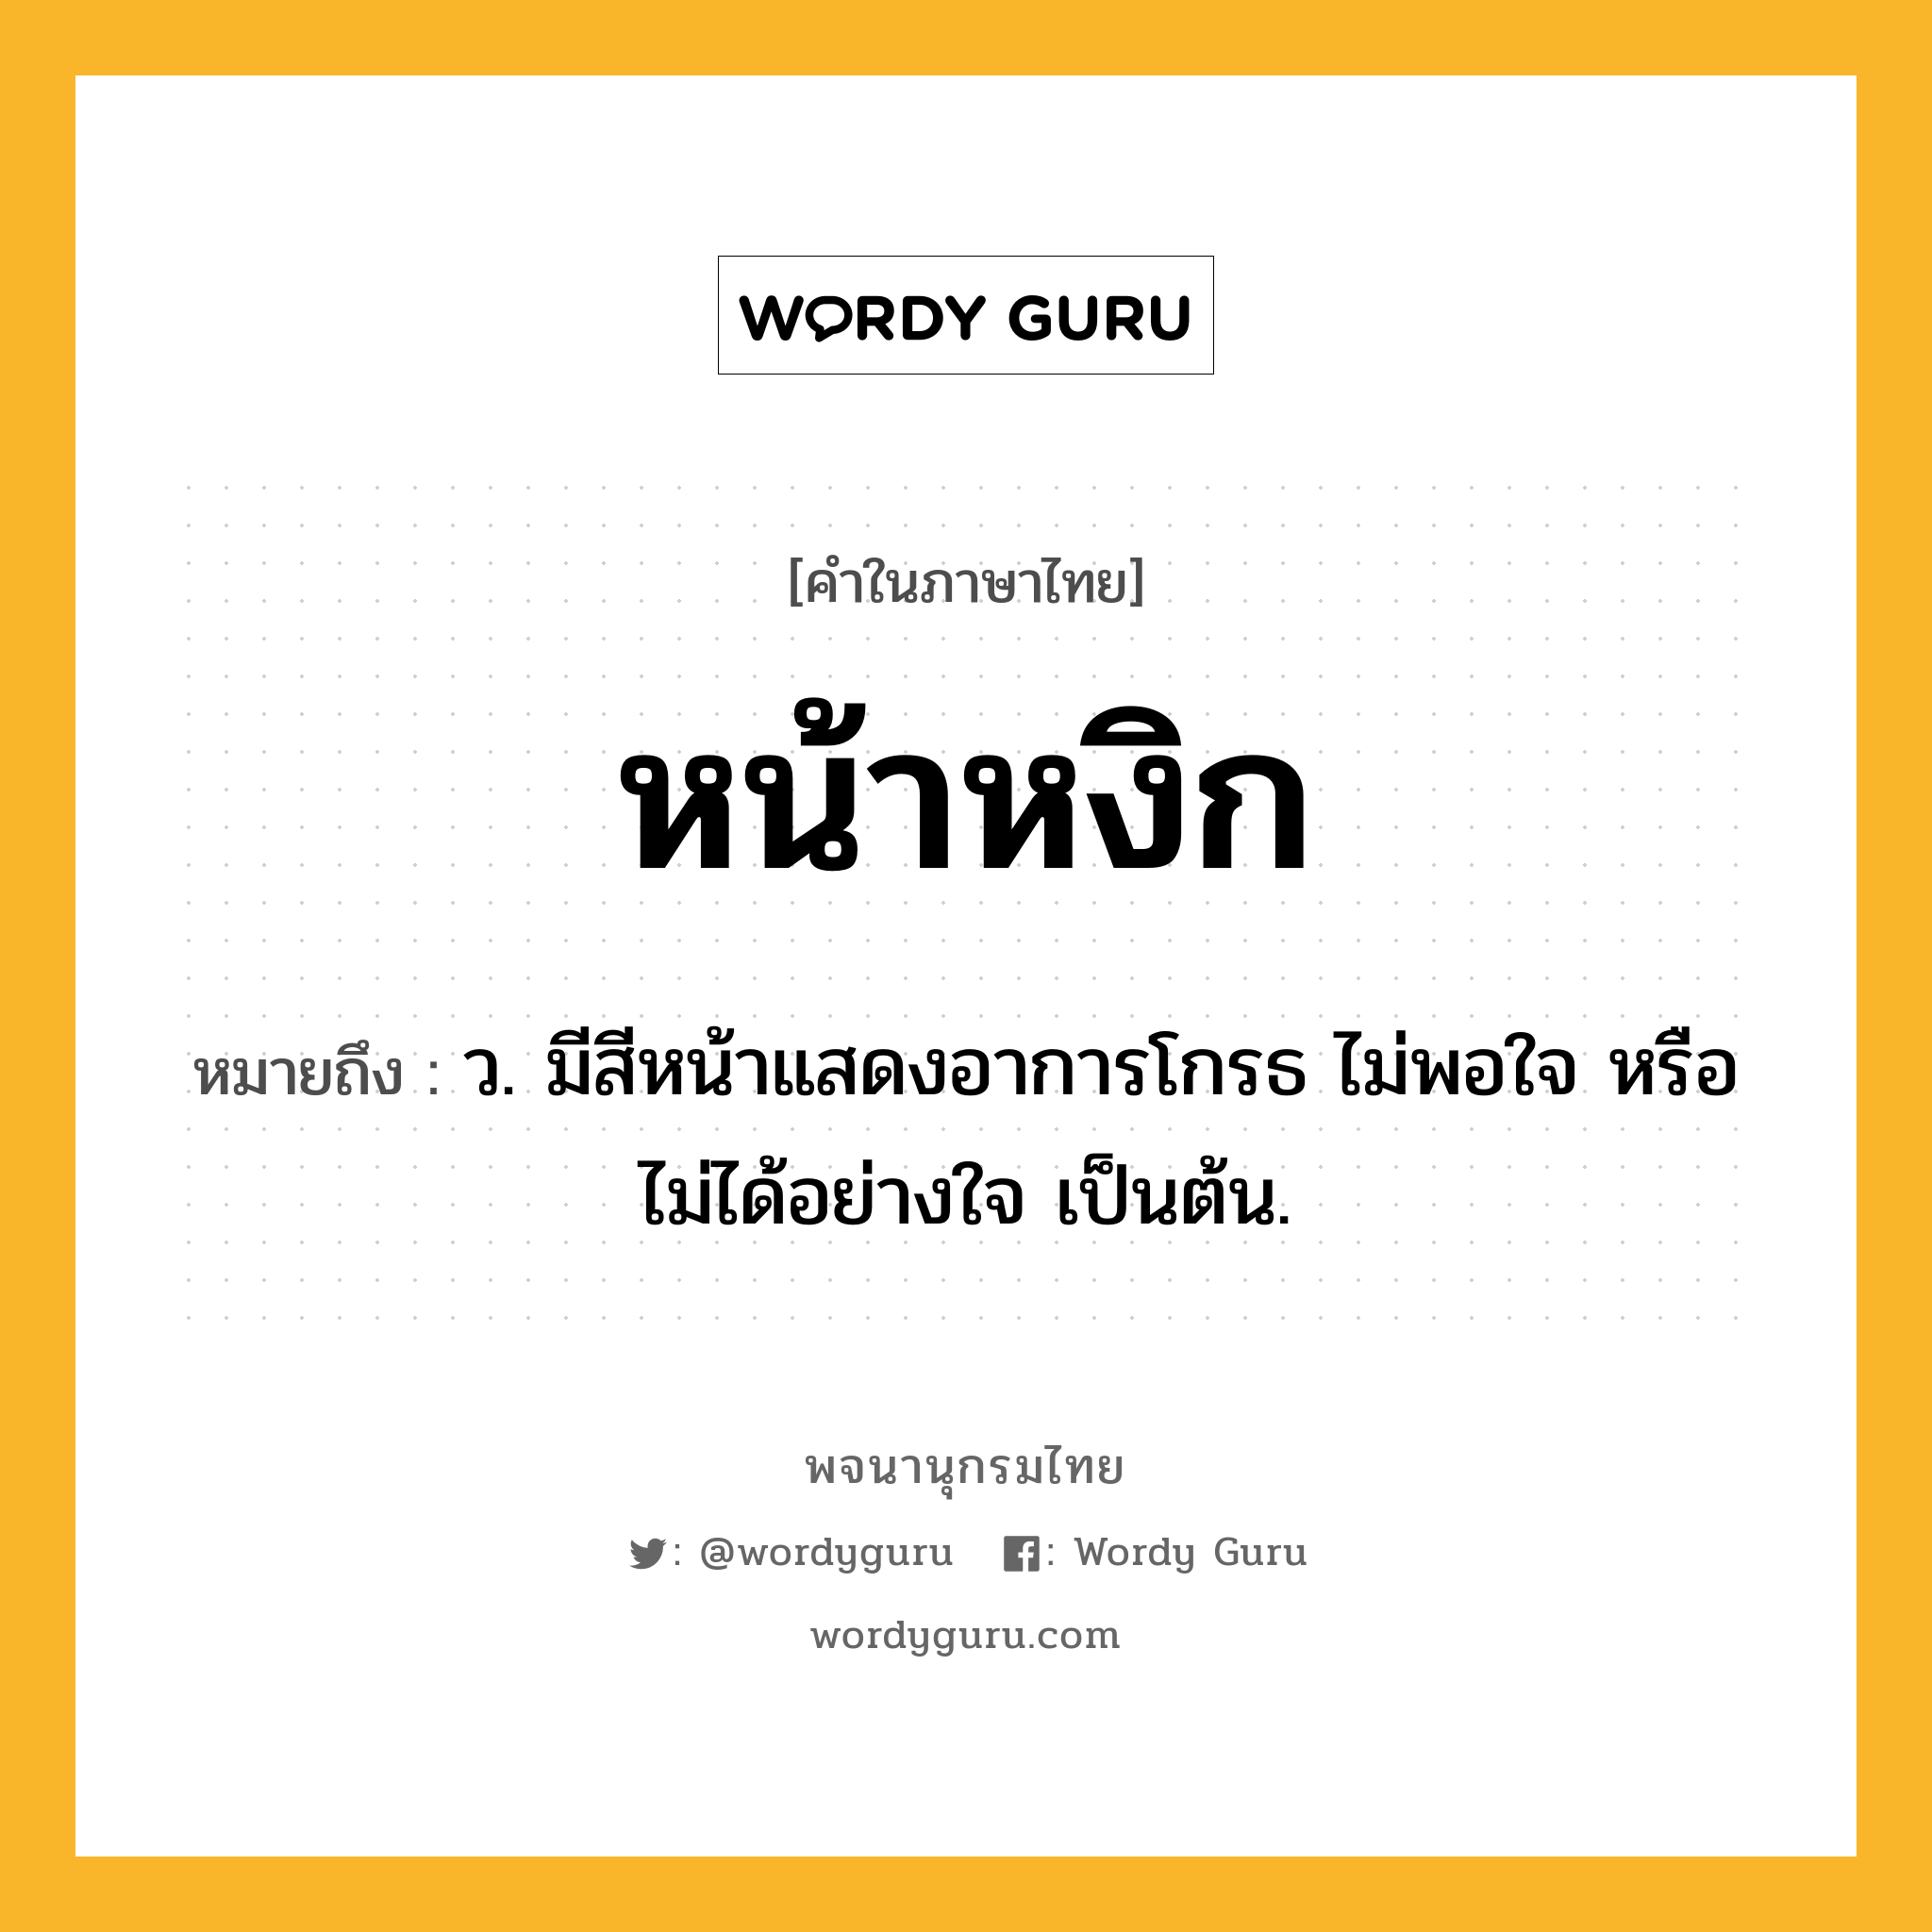 หน้าหงิก หมายถึงอะไร?, คำในภาษาไทย หน้าหงิก หมายถึง ว. มีสีหน้าแสดงอาการโกรธ ไม่พอใจ หรือไม่ได้อย่างใจ เป็นต้น.